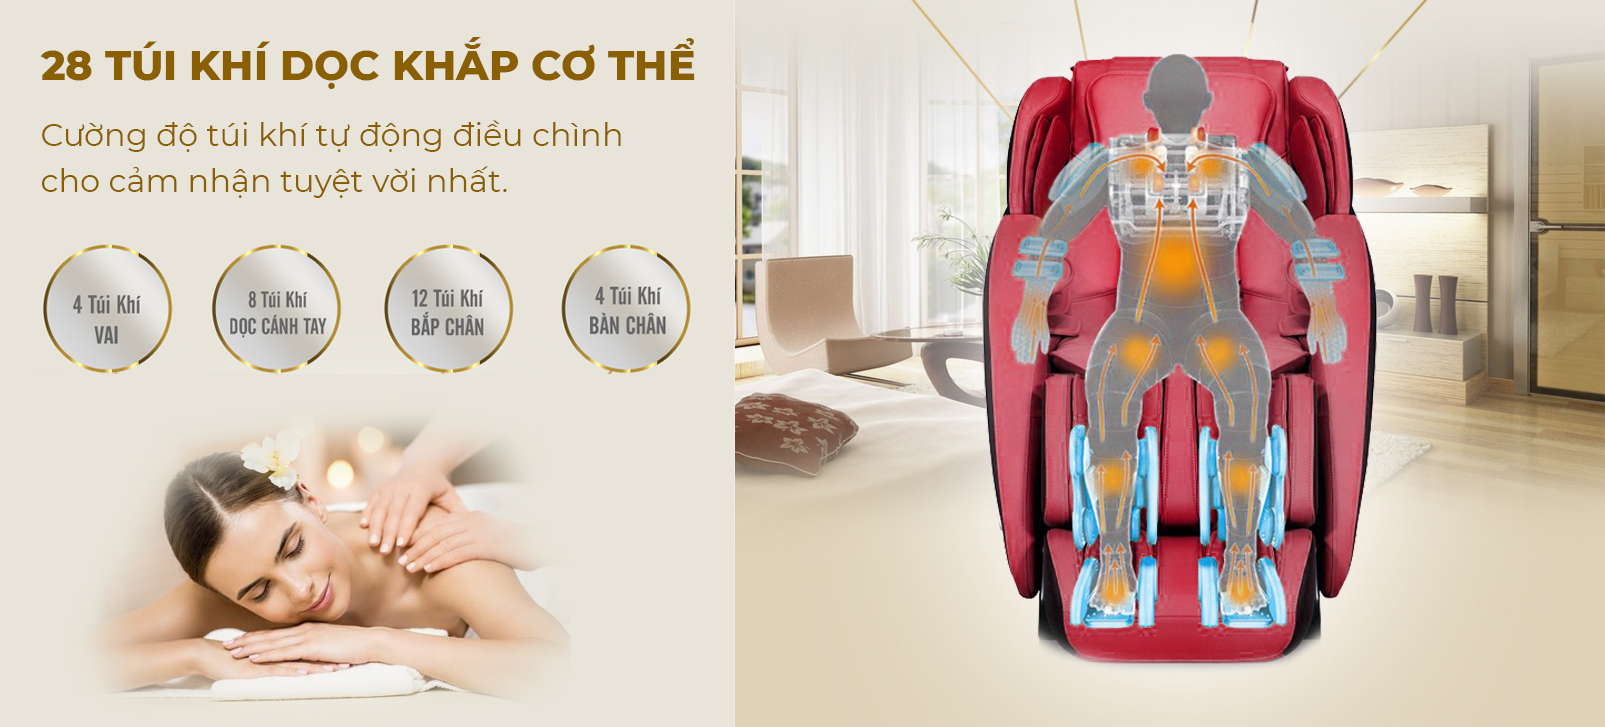 Cấu trúc phân bổ túi khí trên một chiếc ghế massage toàn thân Fujikashi.